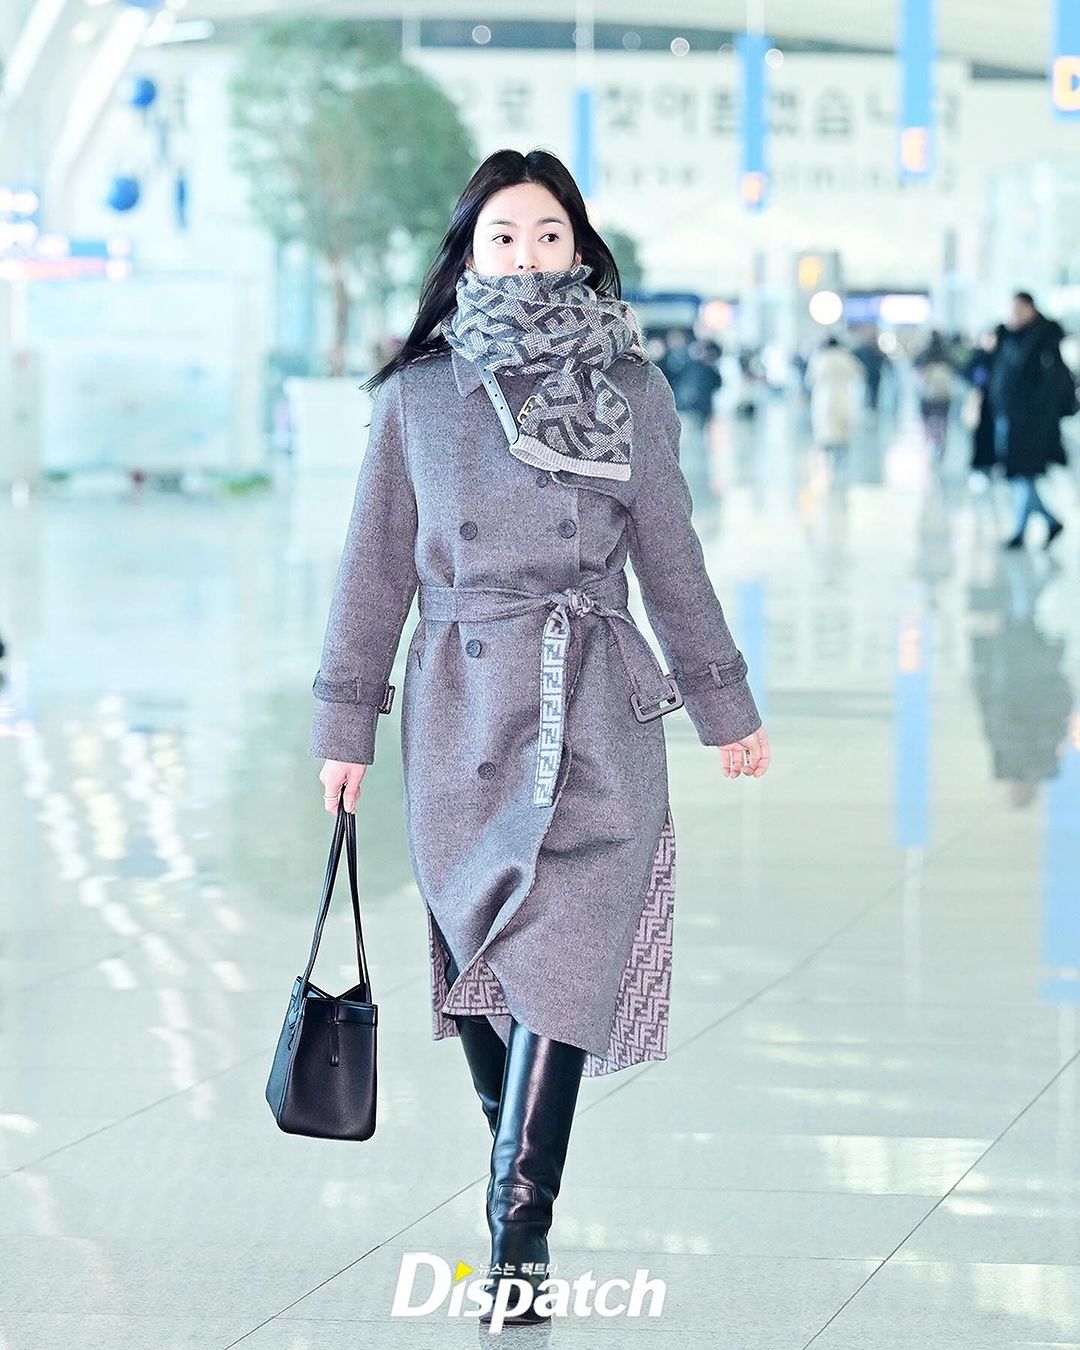 Song Hye Kyo đẹp tỏa sáng tại sân bay sang Pháp, mặt mộc chuẩn nữ thần ở tuổi 42 khiến công chúng xuýt xoa - Ảnh 4.